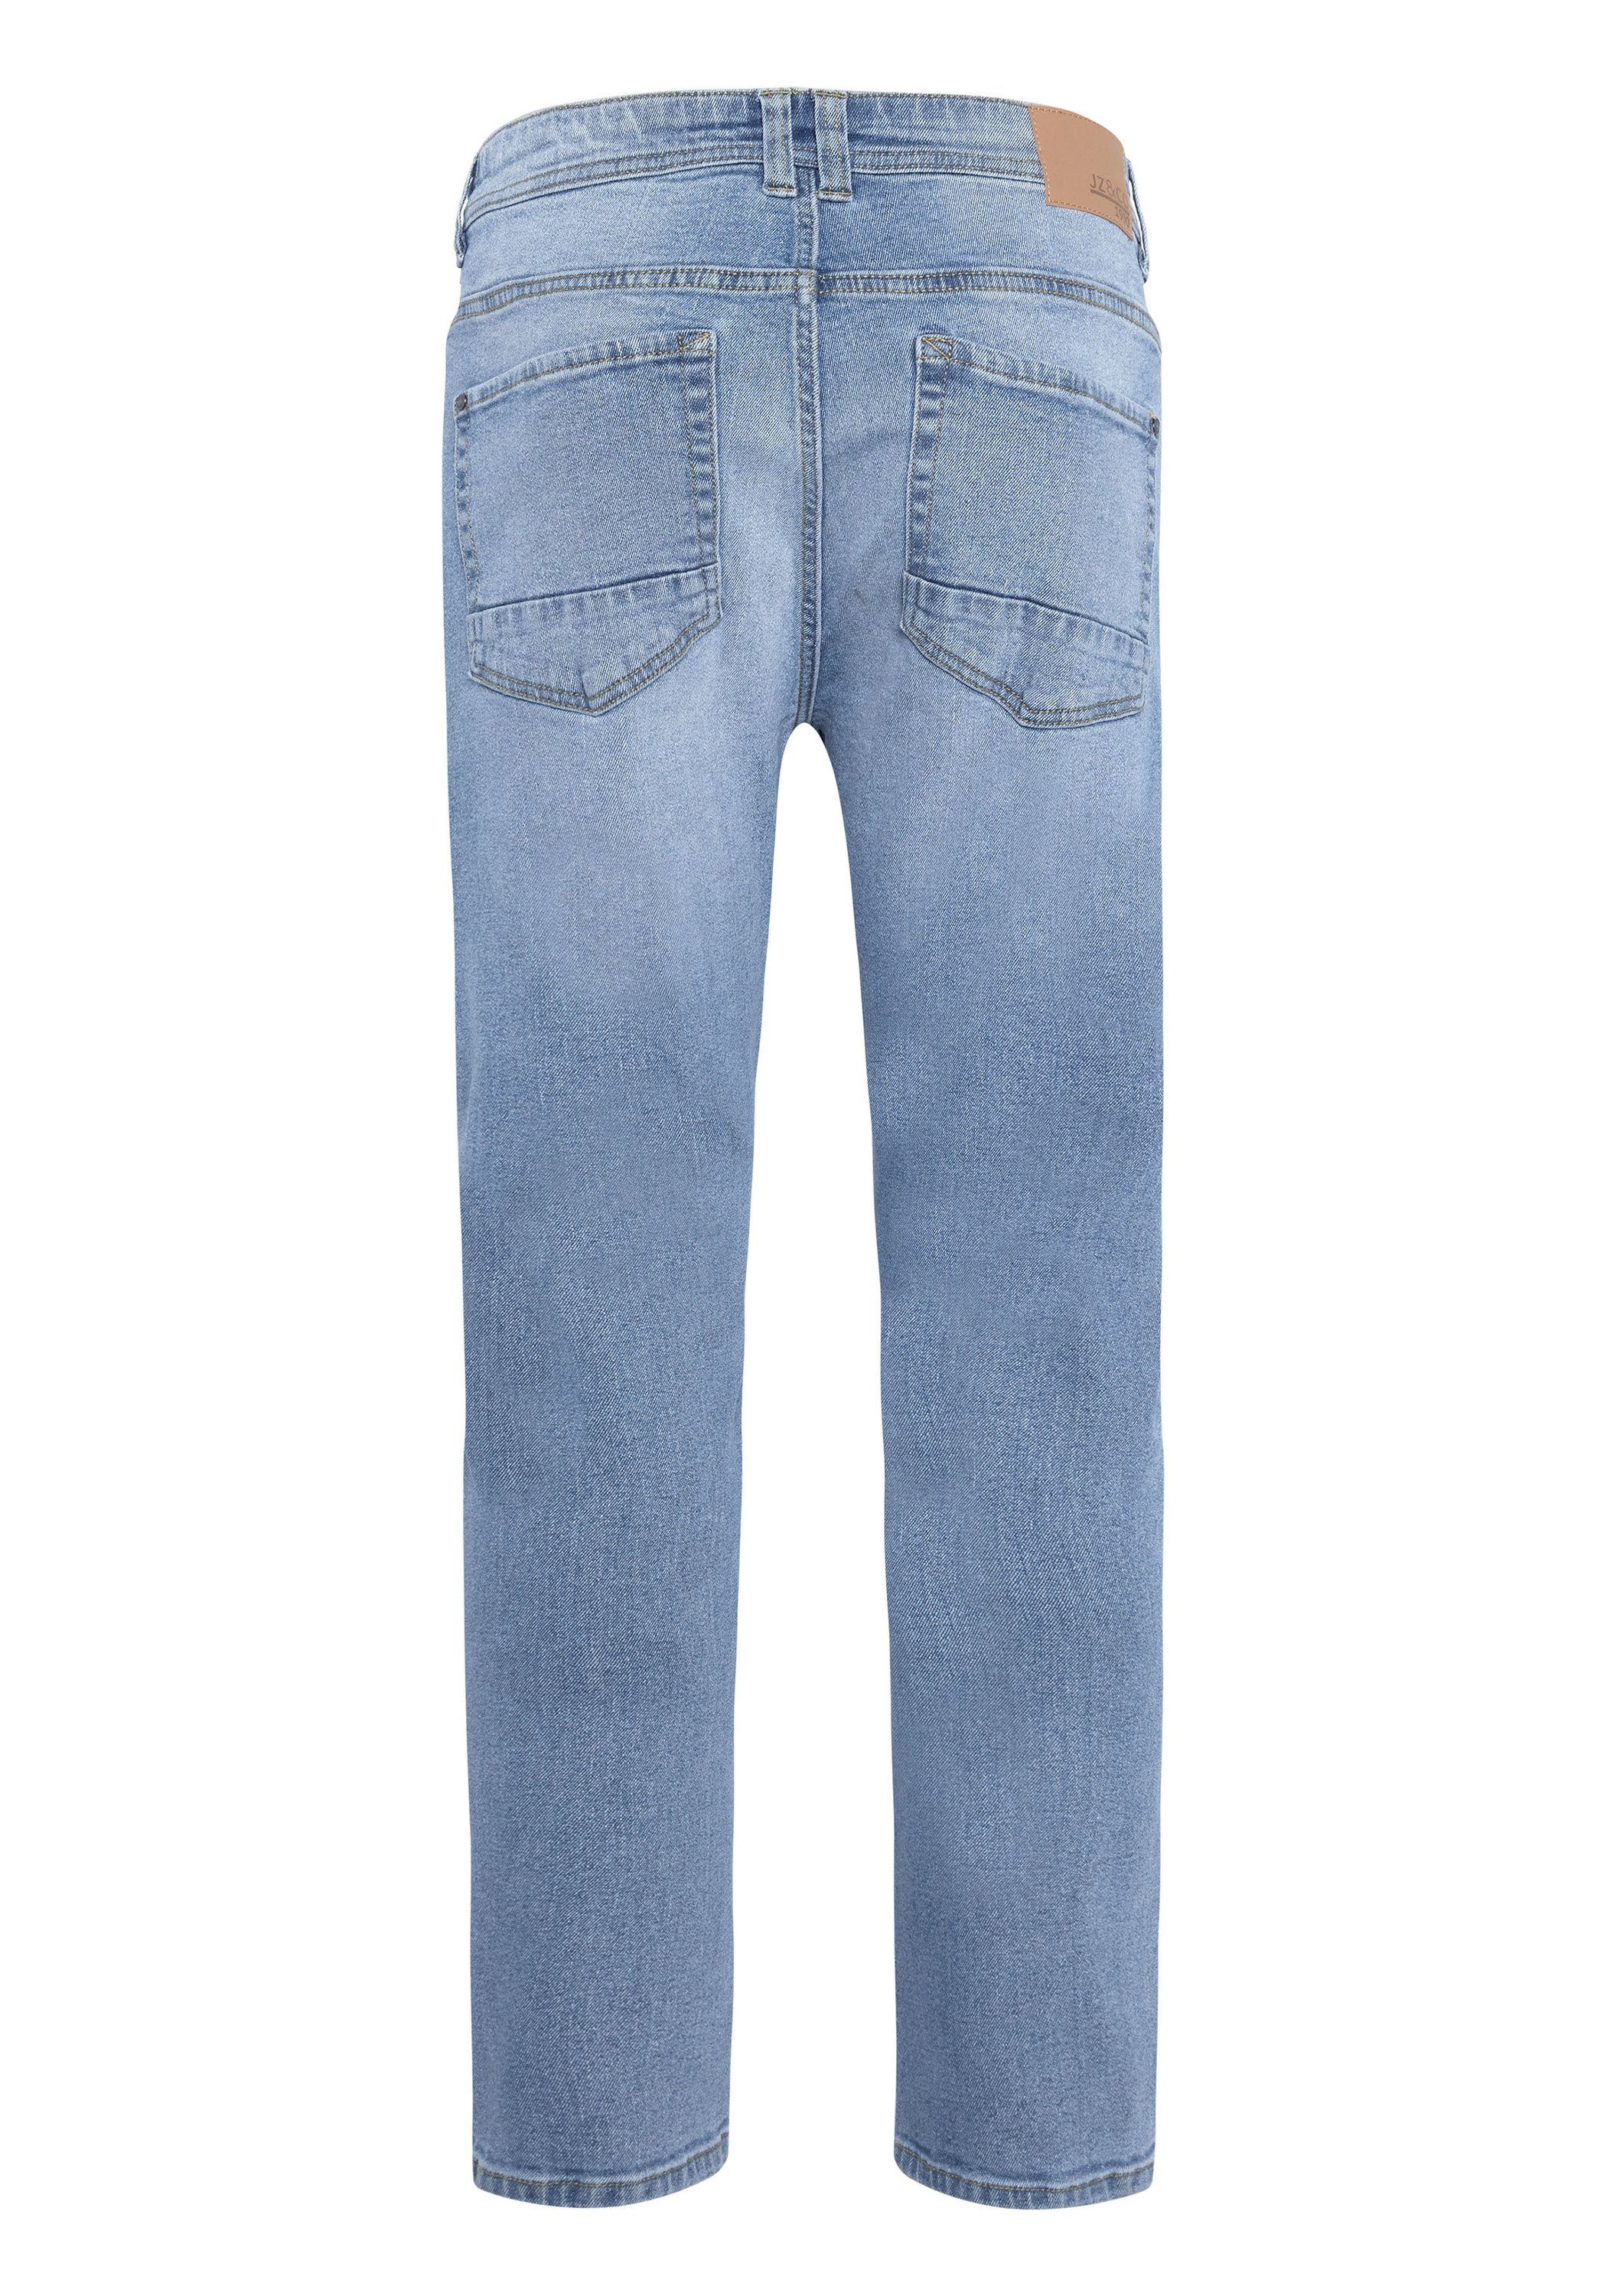 JZ & Co 5-Pocket-Jeans mit Waschung Light 40 Blue leichter